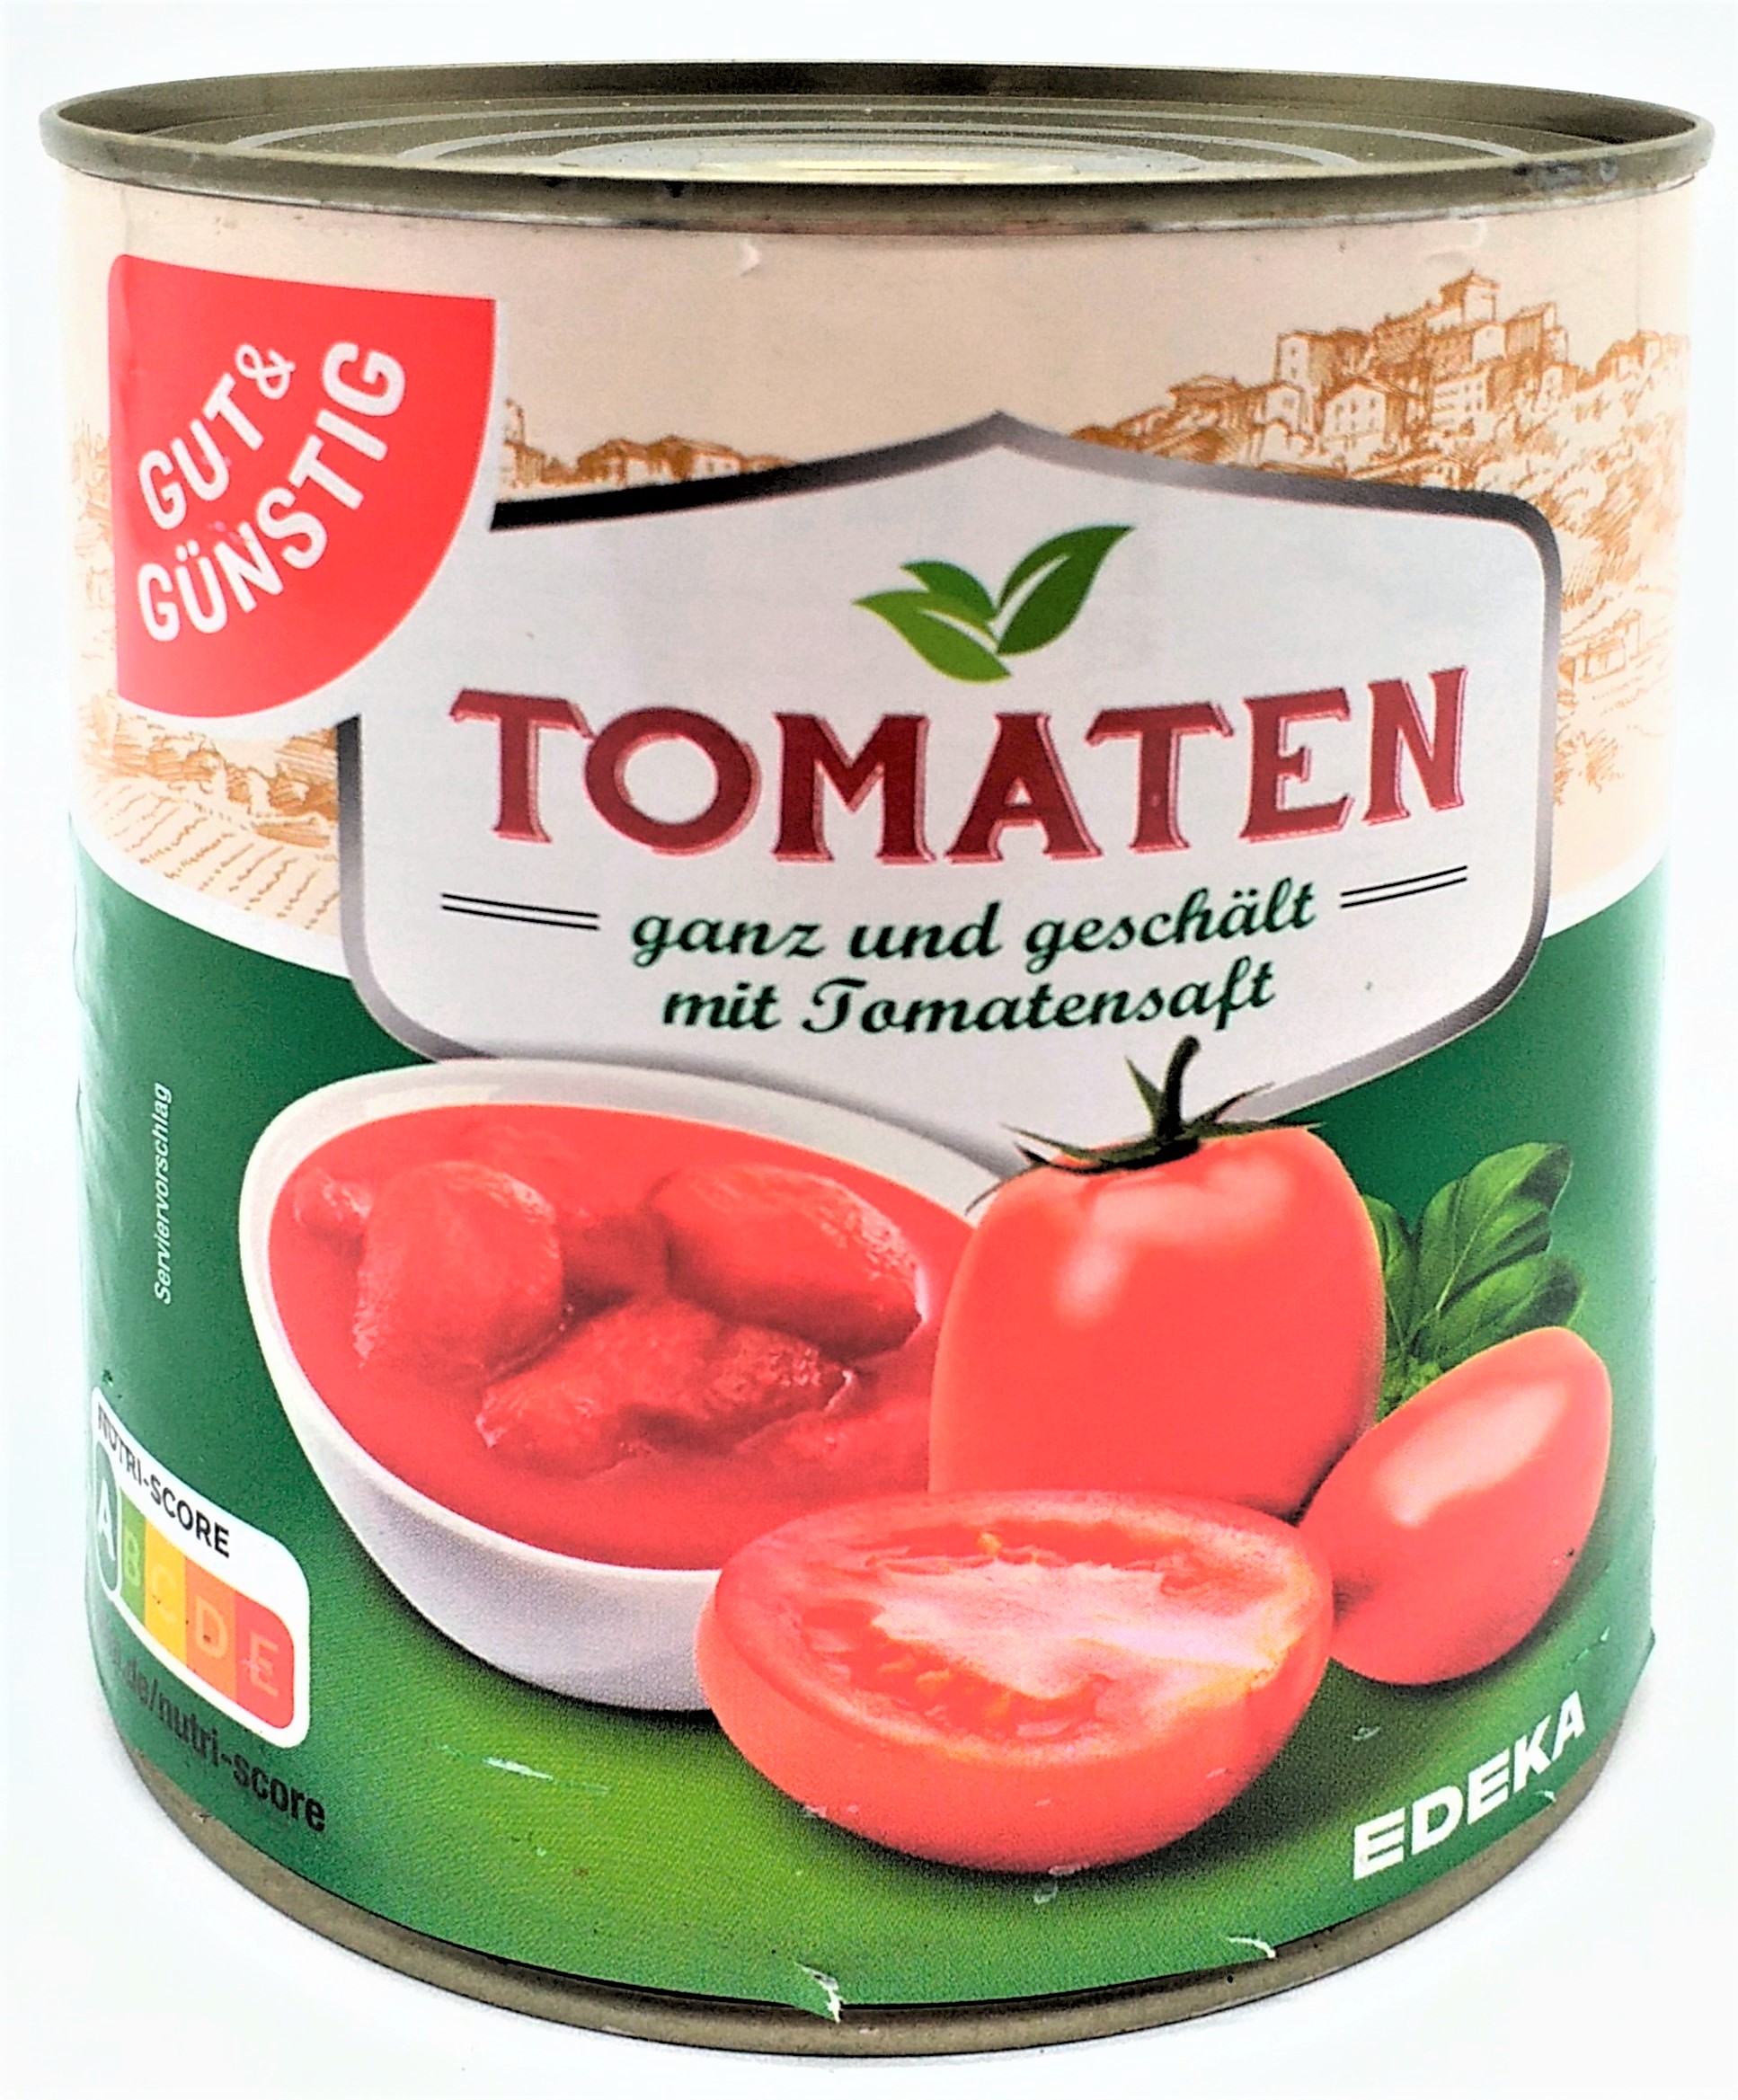 G&G Tomaten ganz und geschält mit Tomatensaft 800g